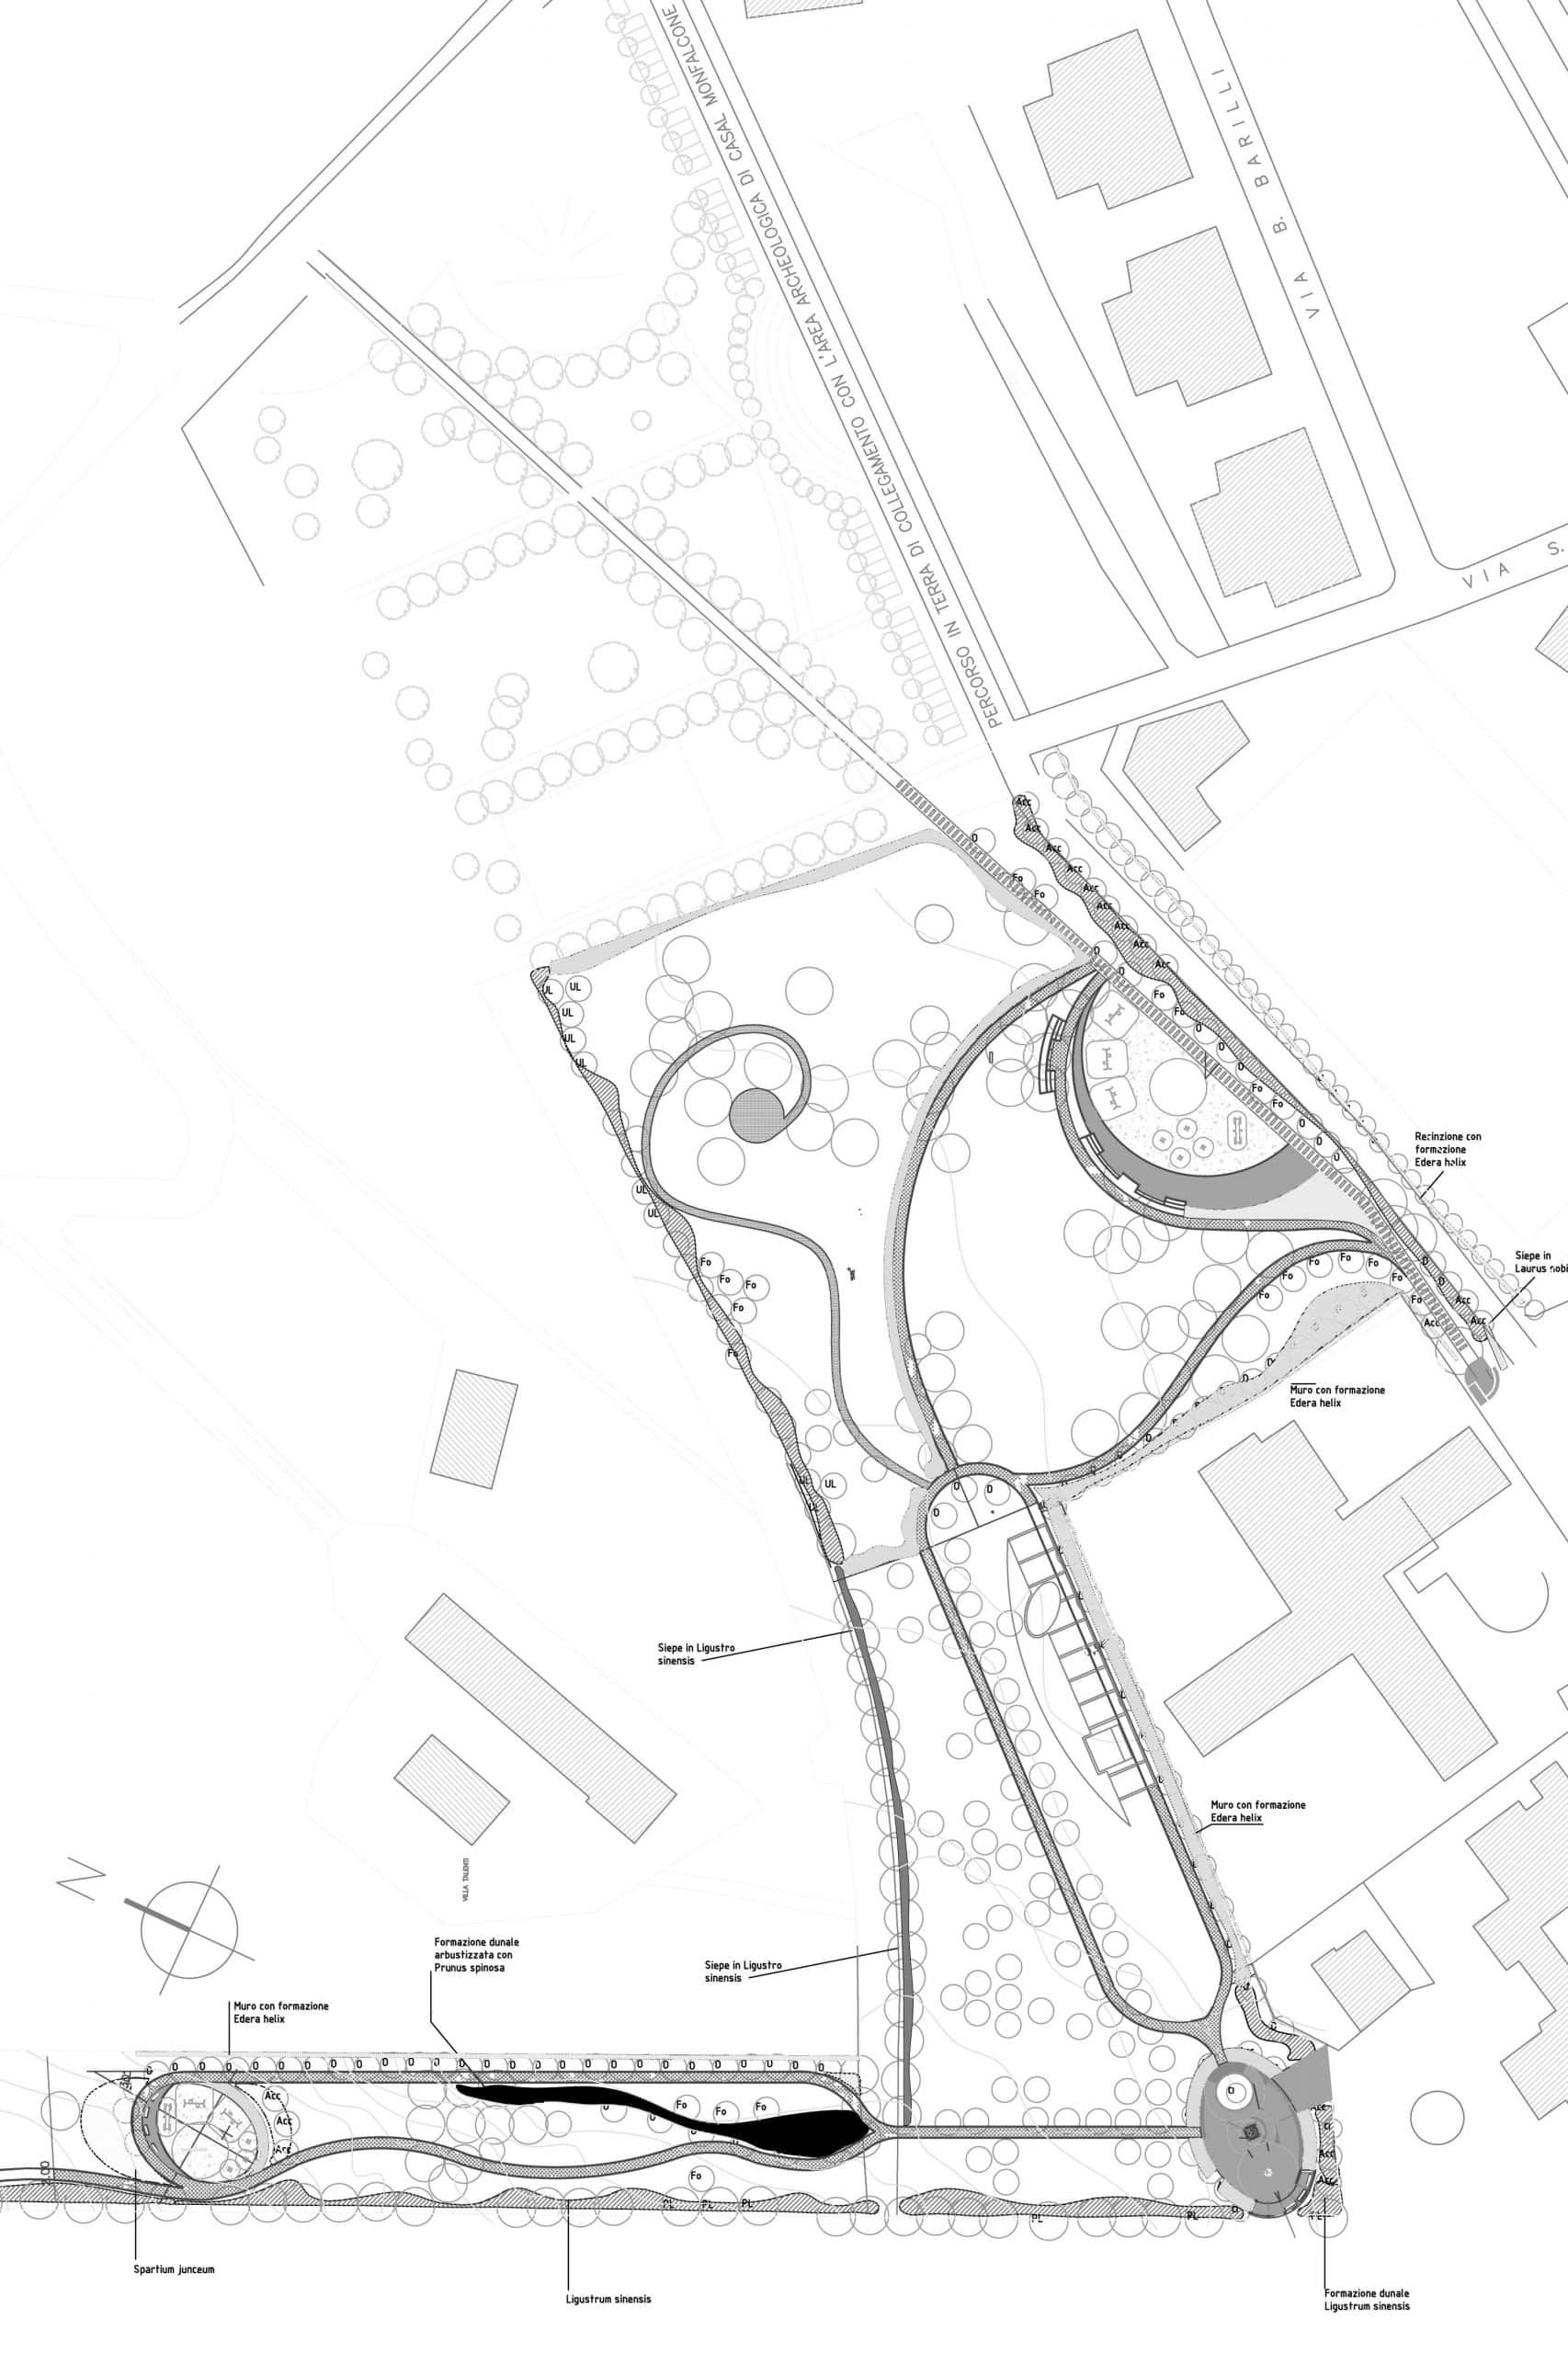 10 - Progetto definitivo di area a verde pubblico a Roma - Talenti, per Cogeim SpA - Planimetria generale